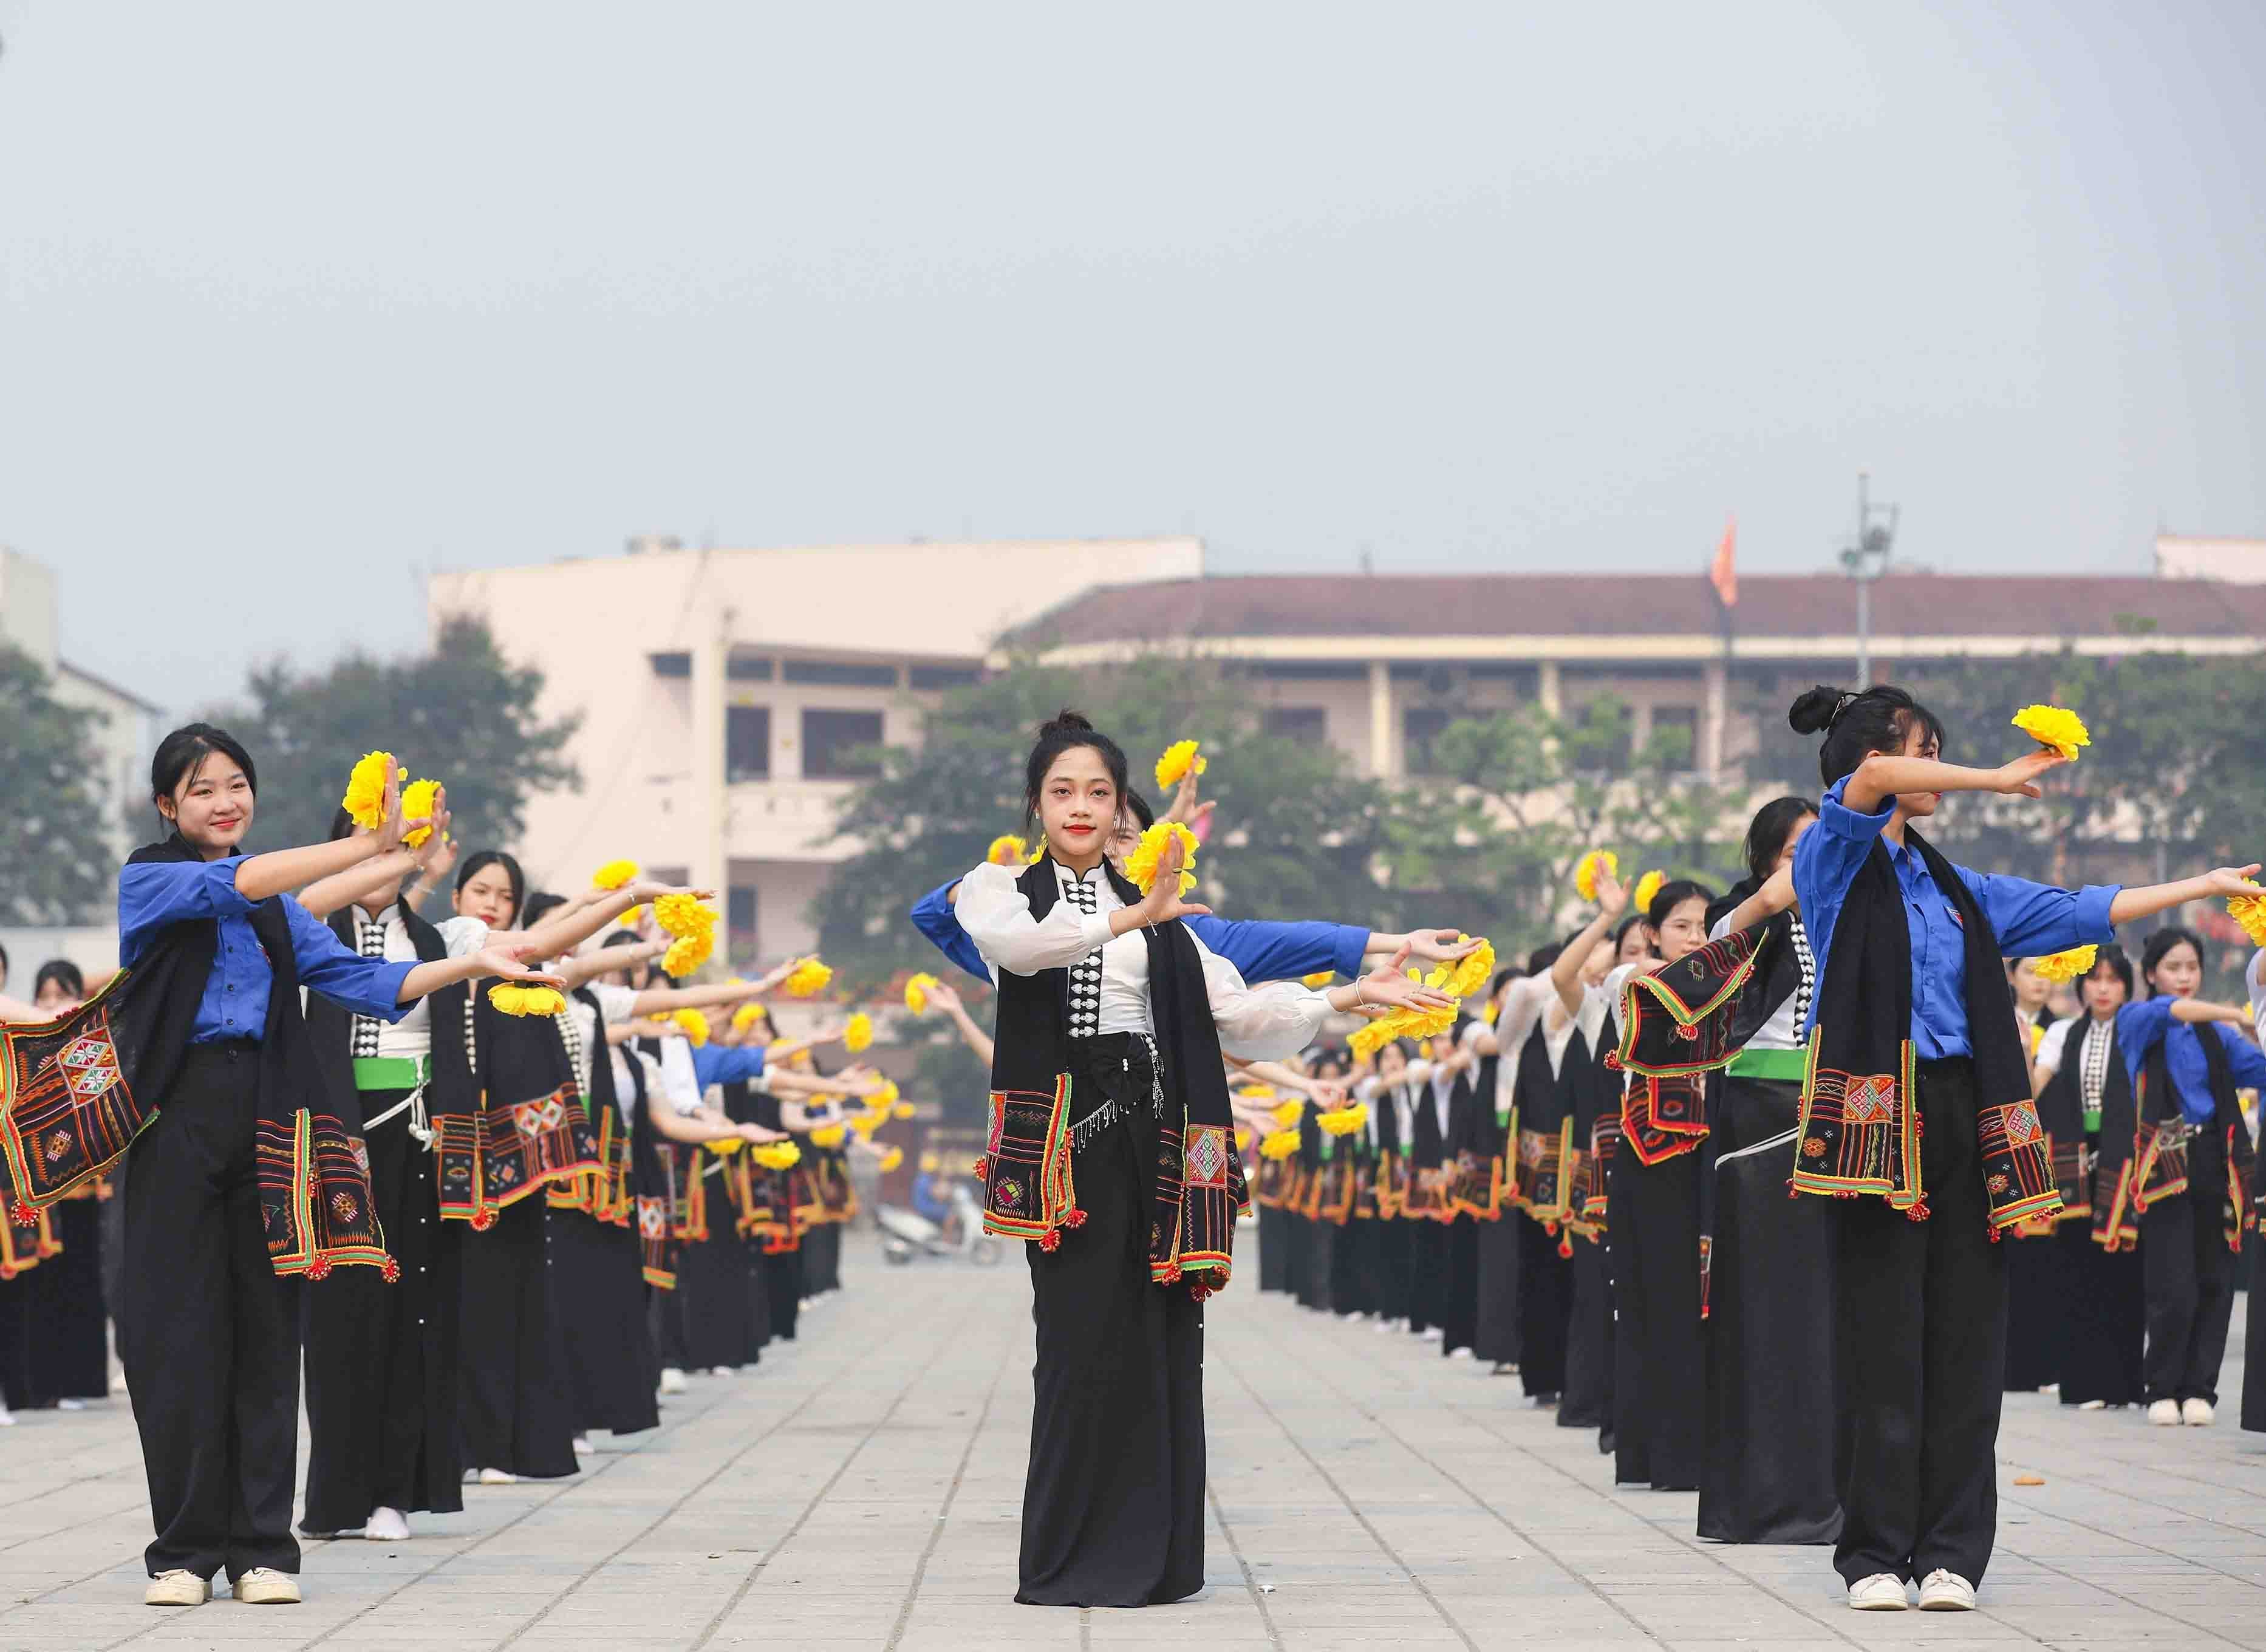 Thông qua chương trình sẽ thu hút khách tham quan du lịch về với Điện Biên chiêm ngưỡng, trải nghiệm và hòa mình vào những điệu múa, điệu nhảy gần gũi, đắm say cùng nhân dân các dân tộc tỉnh Điện Biên.